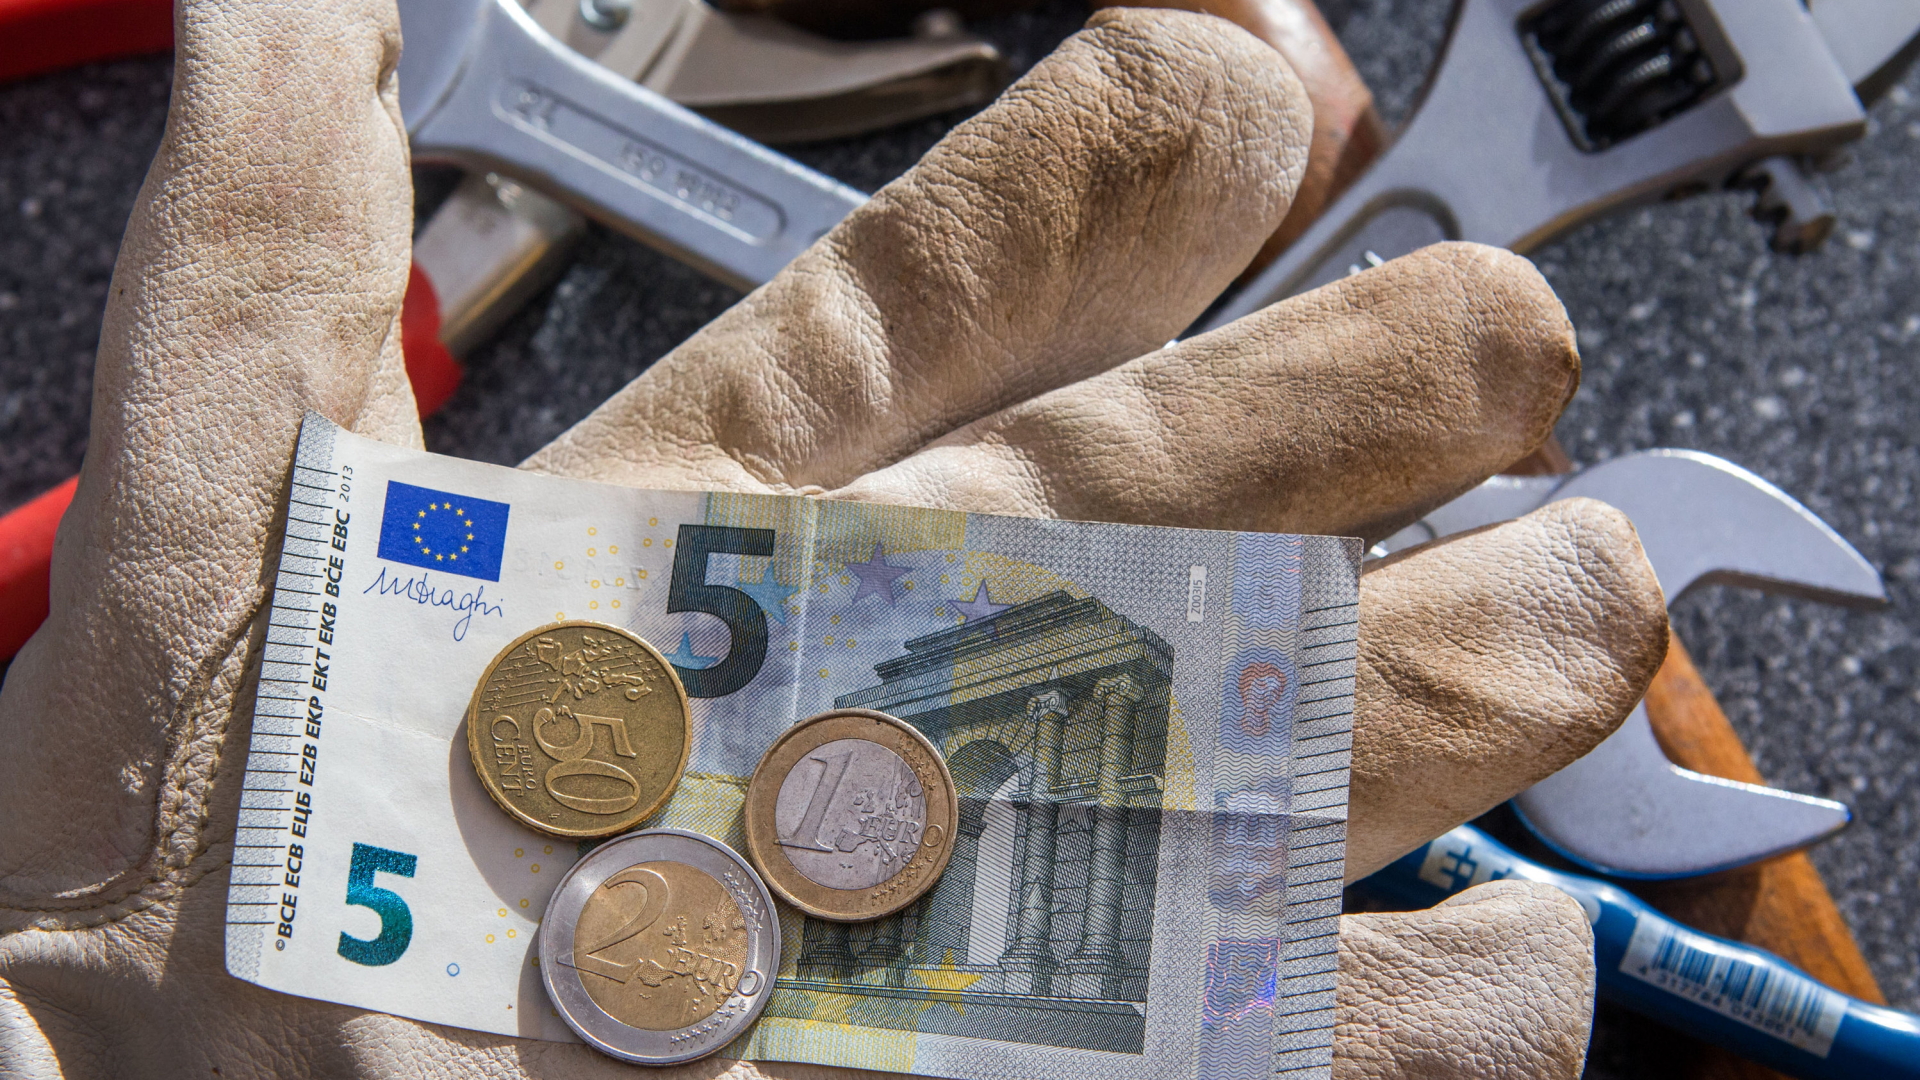 Ein Handwerker mit Arbeitshandschuh hält einen Fünf-Euro-Schein und ein paar Münzen in der Hand.